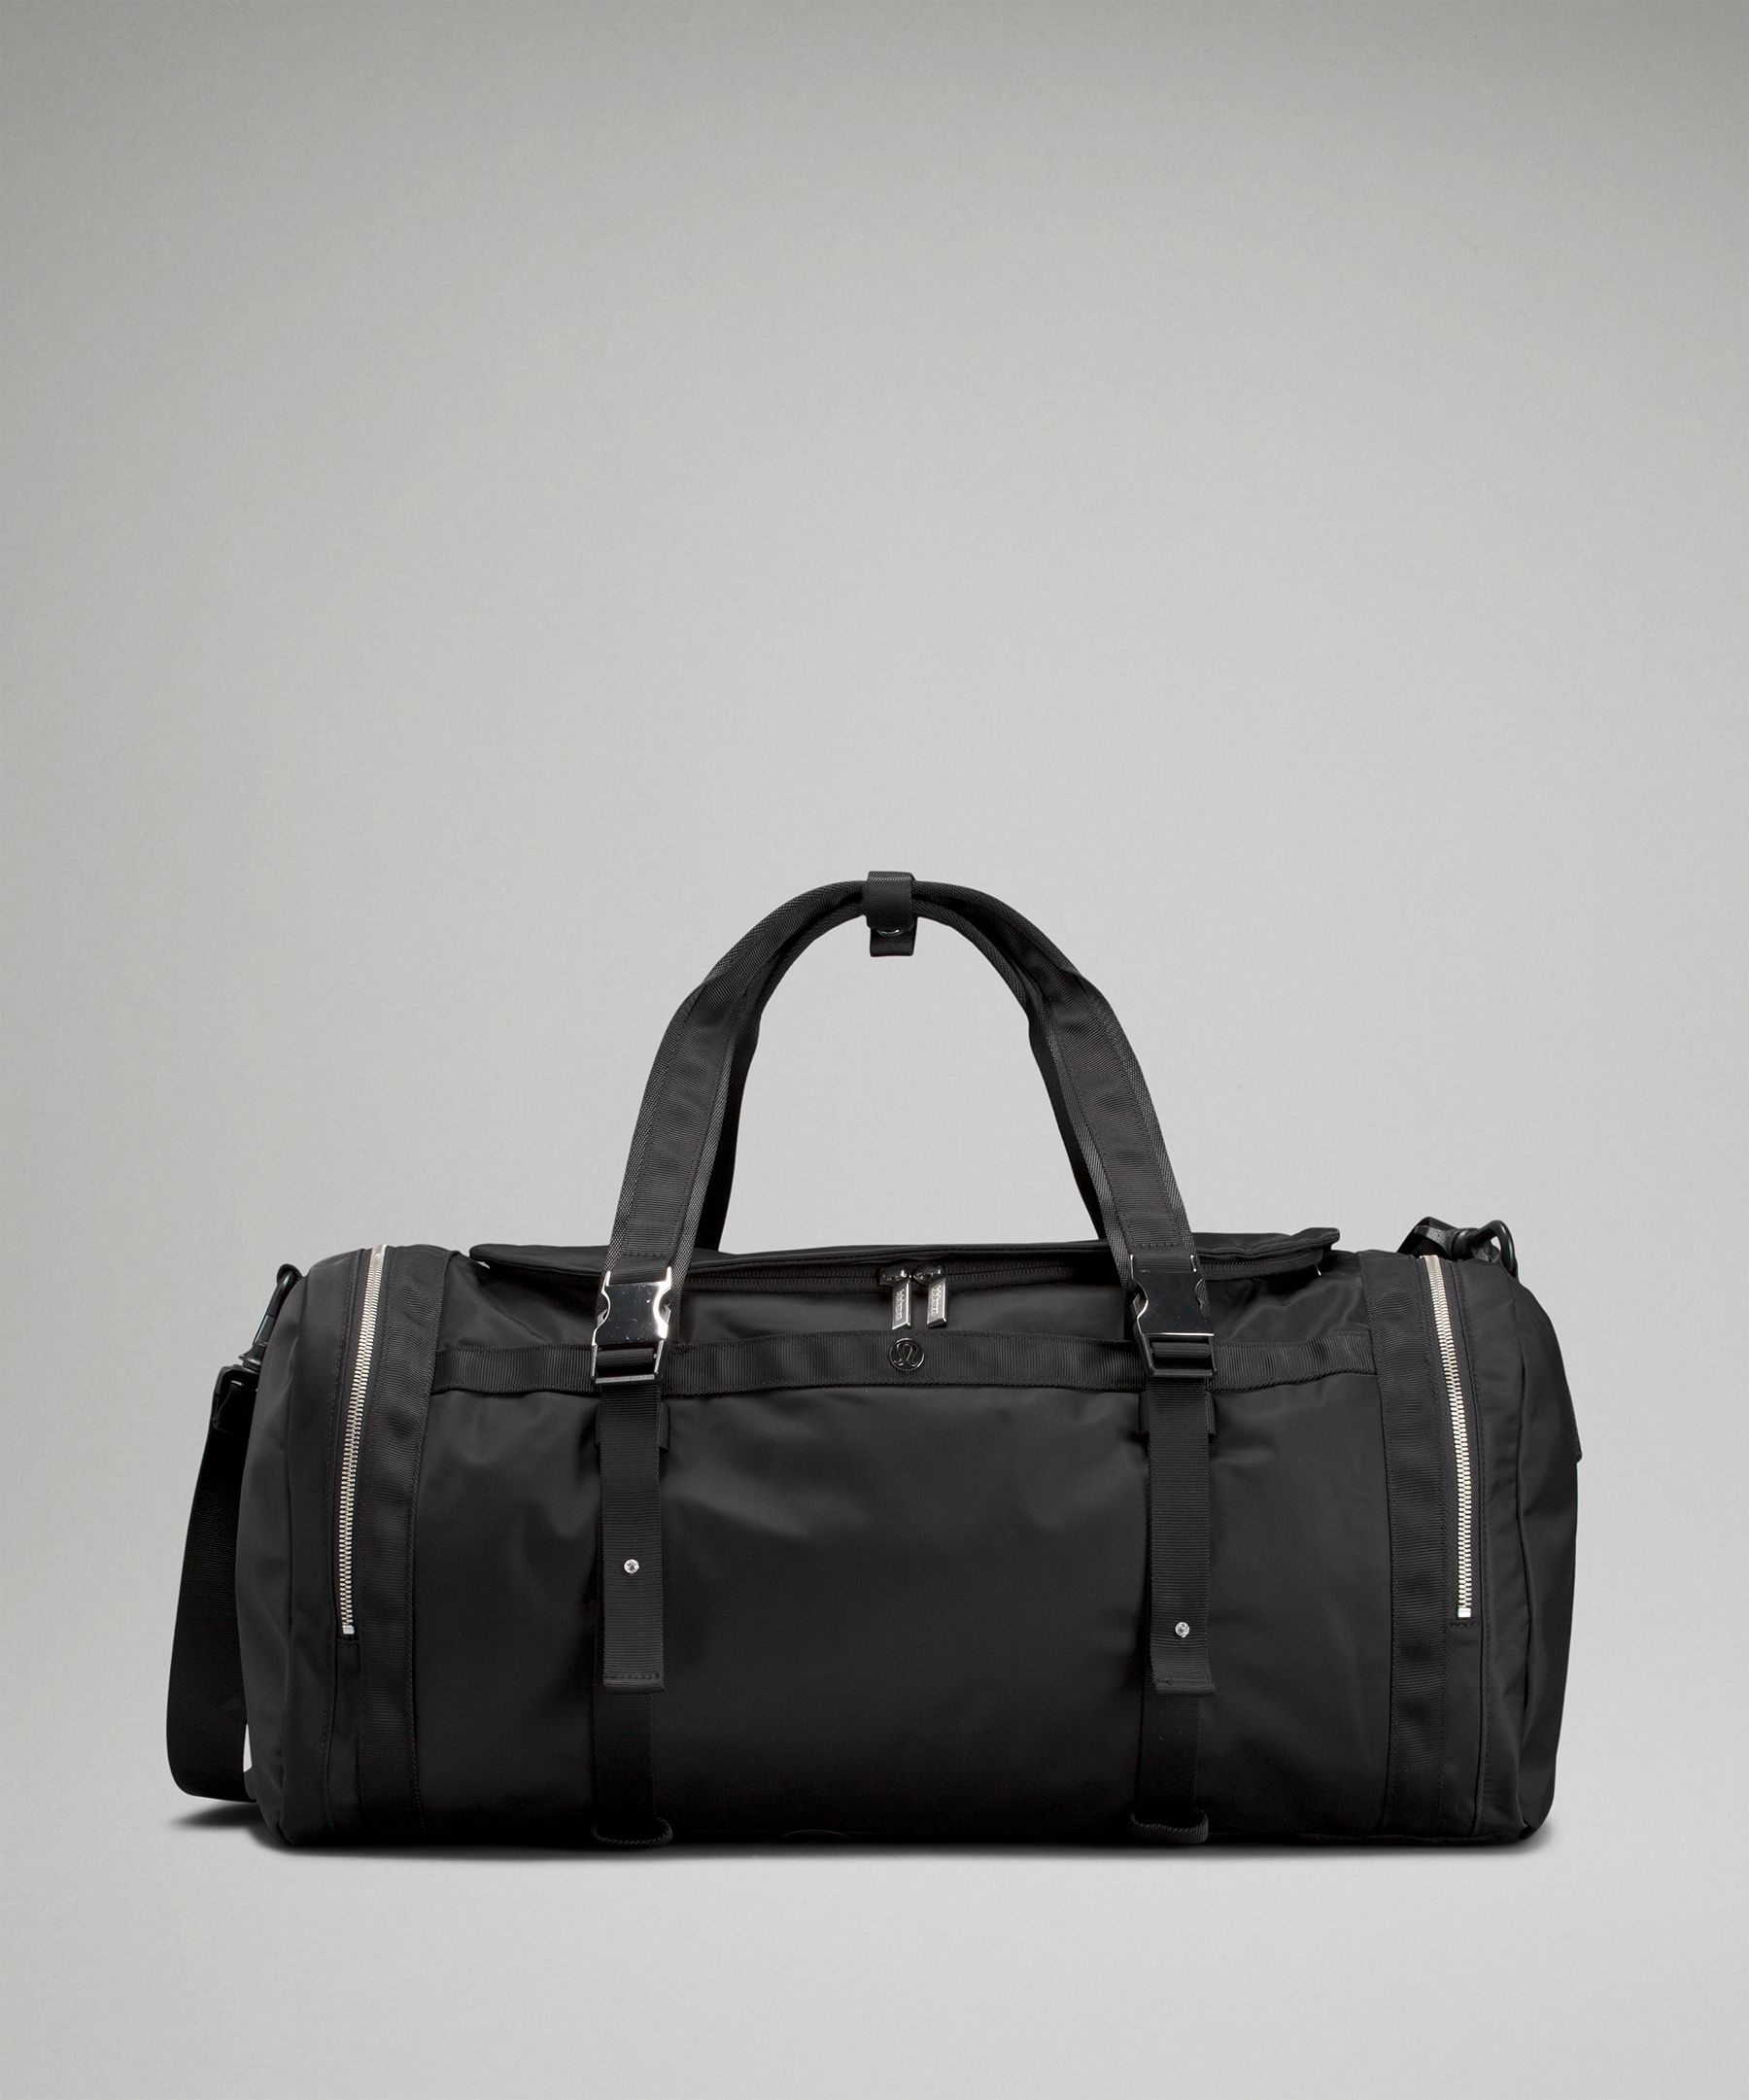 Wunderlust Large Duffle Bag 40L | Unisex Bags,Purses,Wallets | lululemon